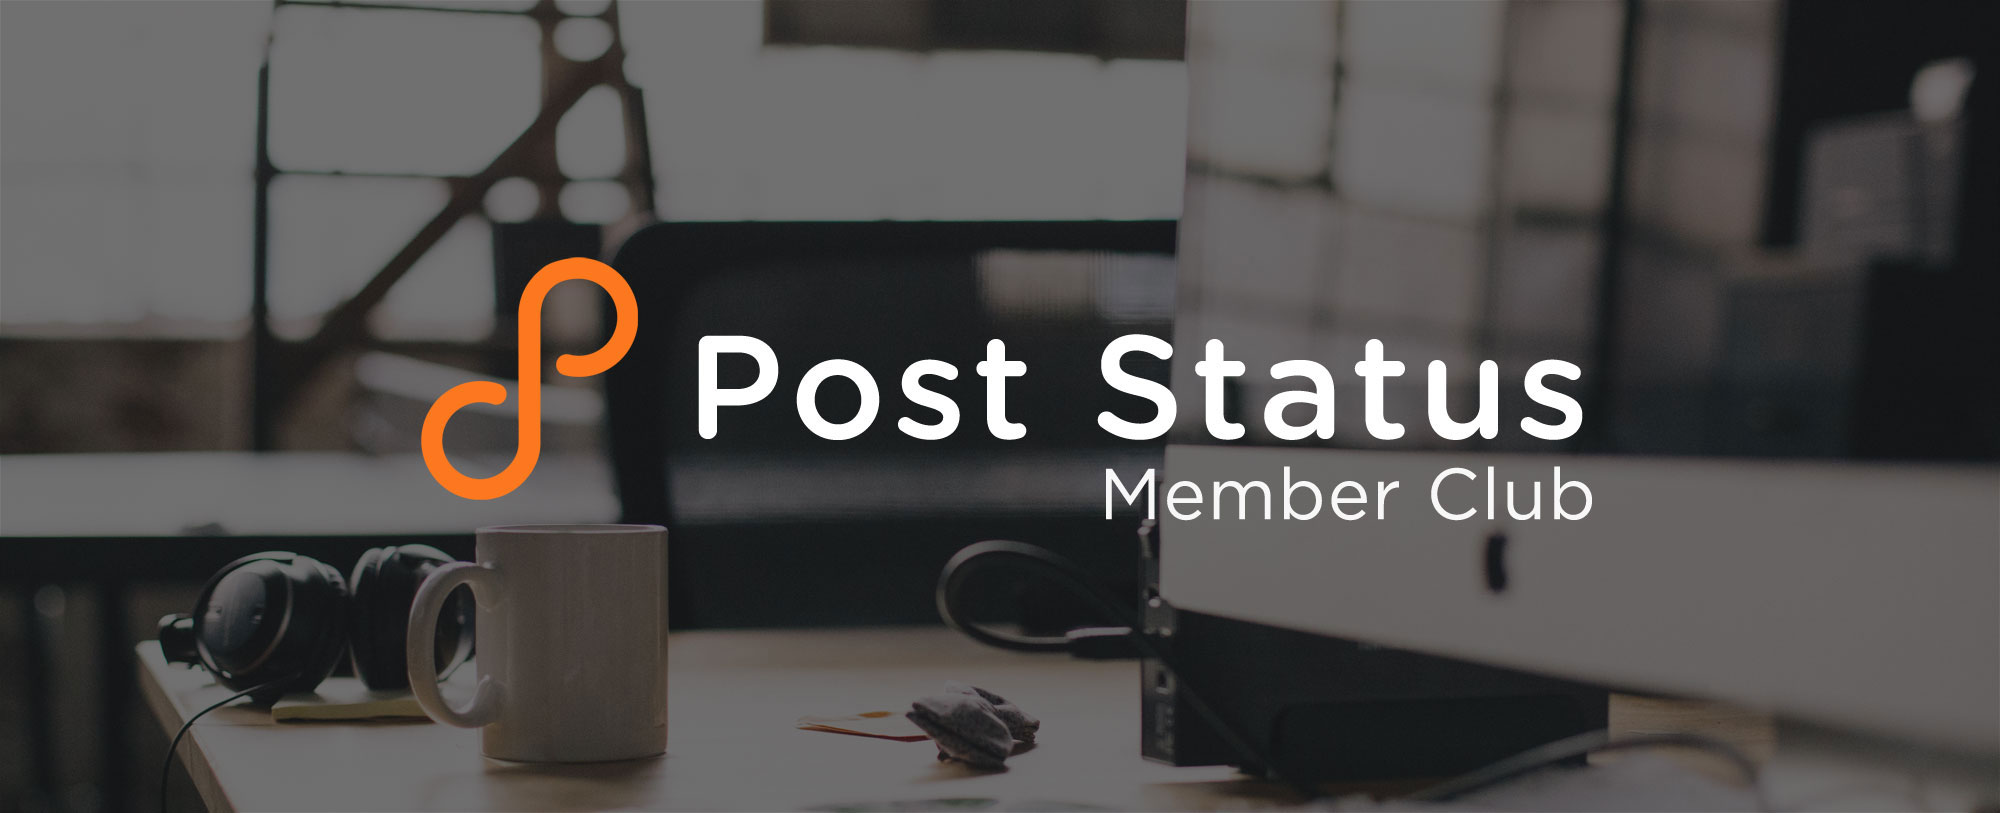 New Membership Options at Post Status